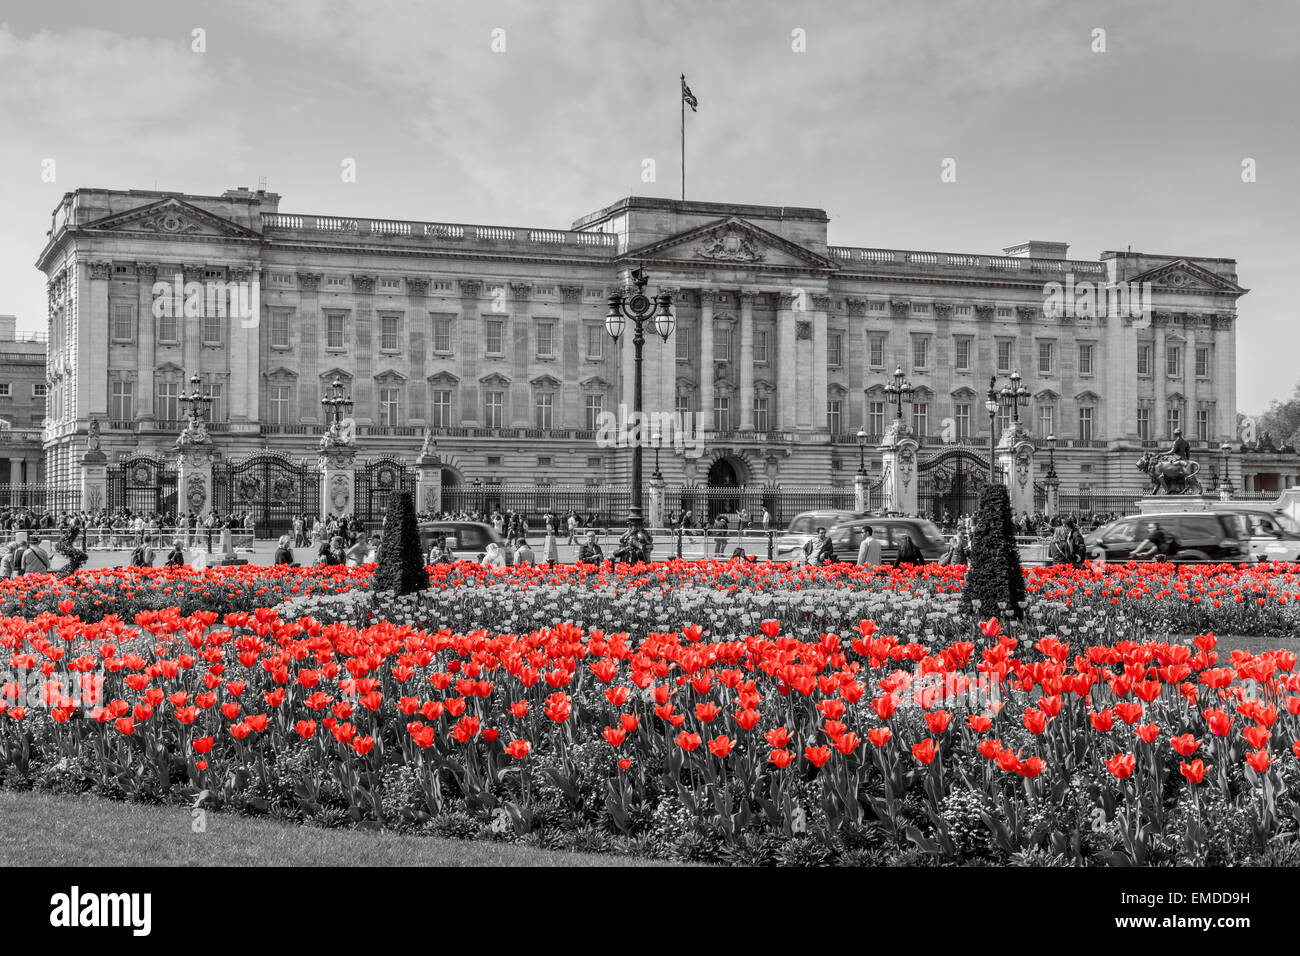 Un paysage de Buckingham Palace au printemps avec temps de traitement sélectif couleur Ville de Westminster London UK Banque D'Images